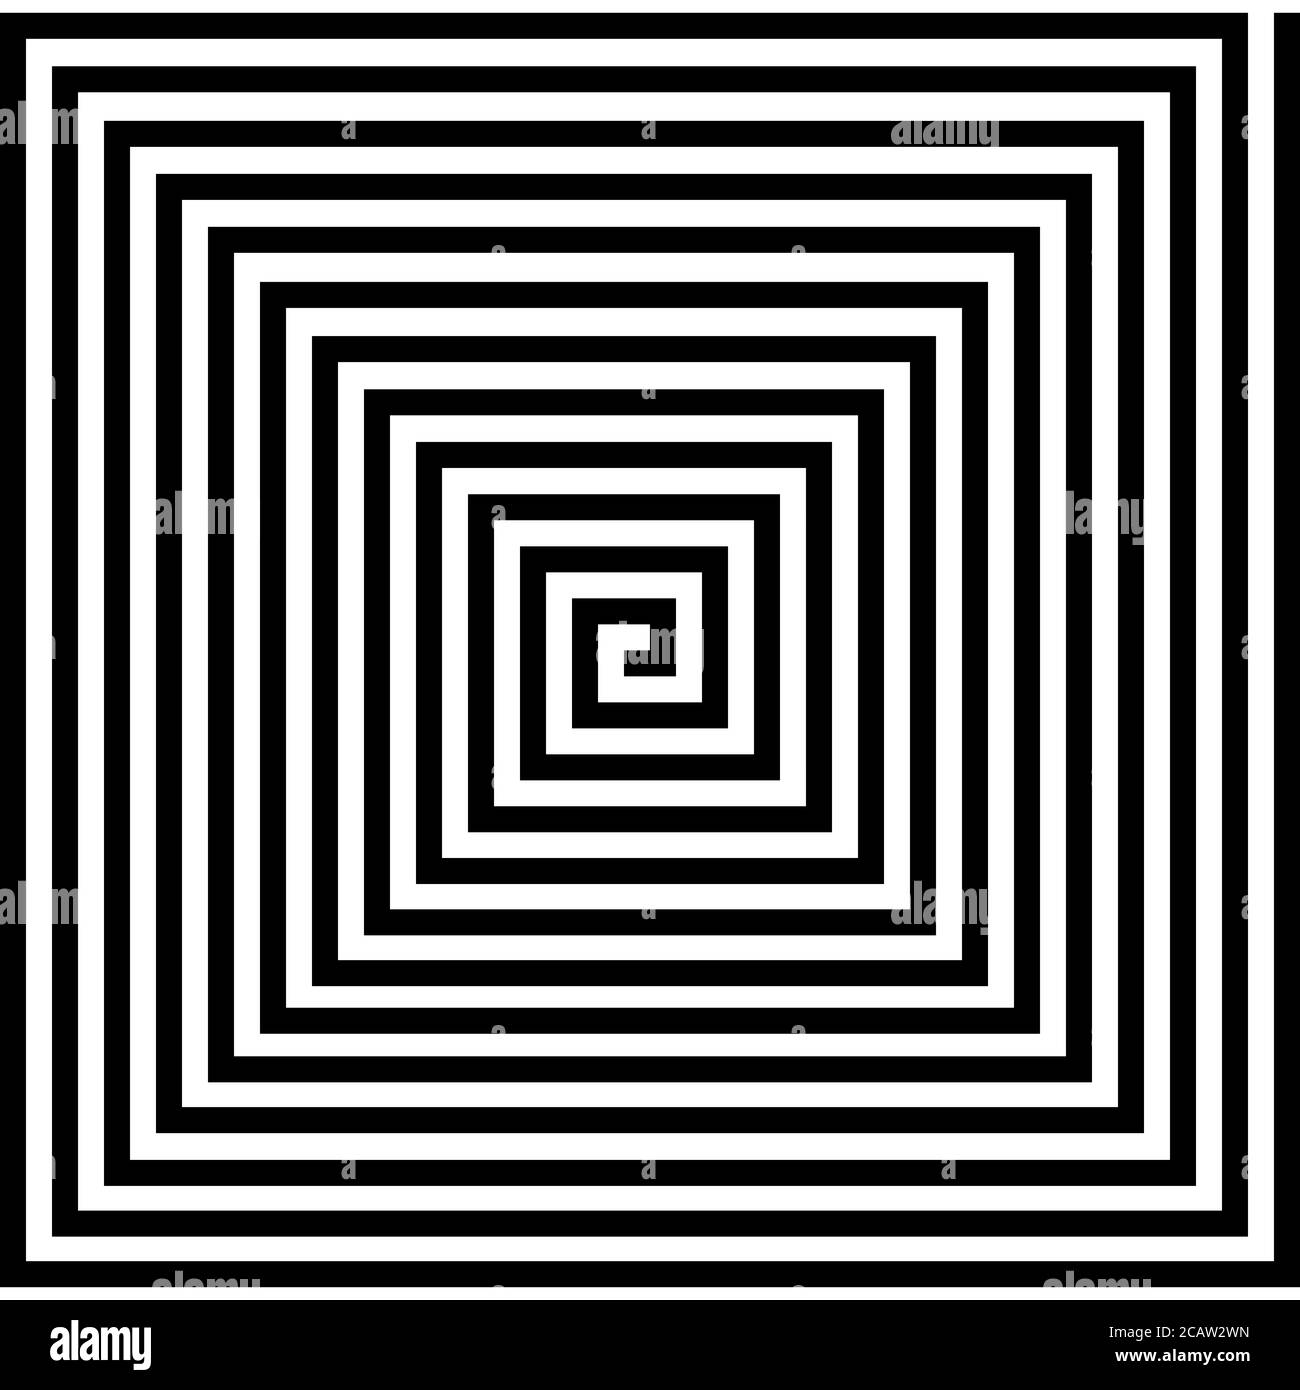 Spiralförmiges quadratisches Muster, das eine optische Täuschung erzeugt Stockfoto